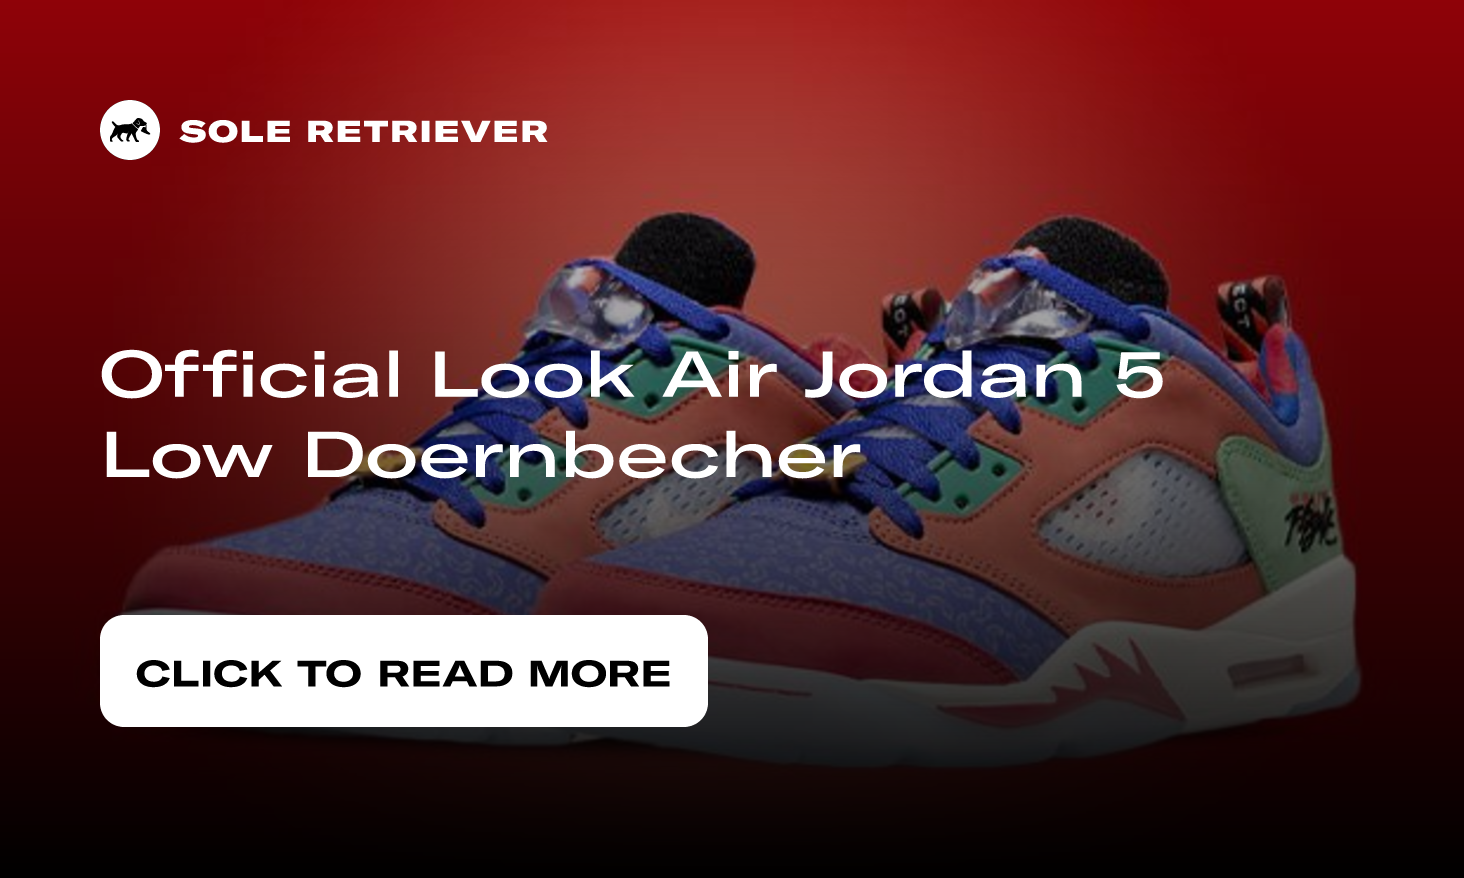 Air Jordan 5 Doernbecher - On-Feet Images 